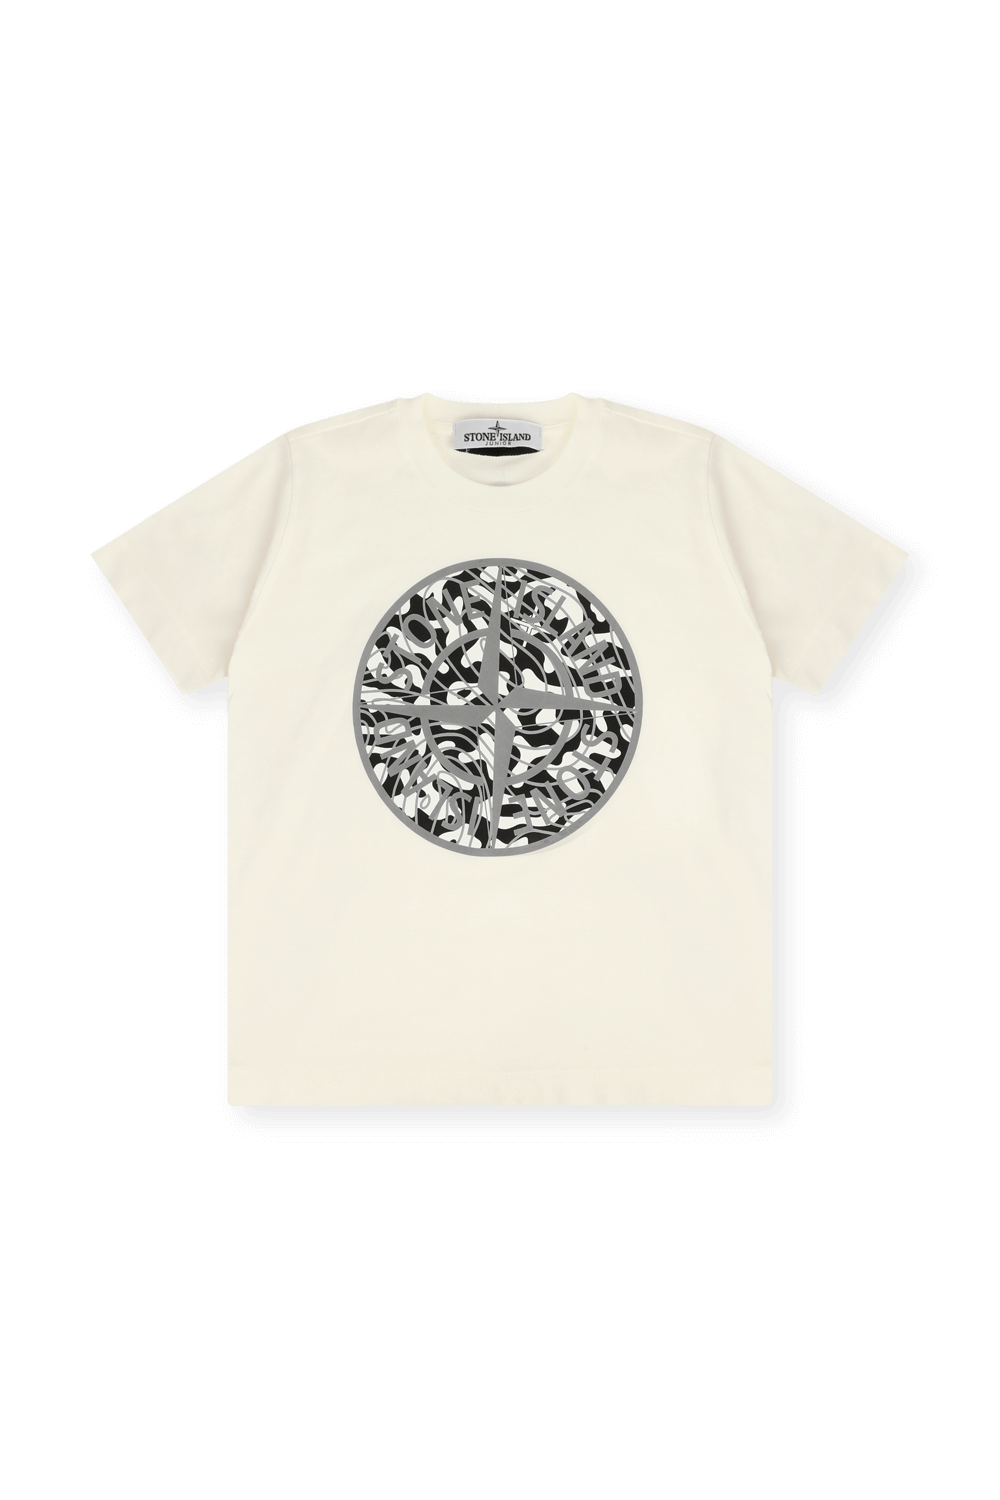 גילאי 10-12 חולצת טי עם הדפס לוגו גראפי STONE ISLAND KIDS